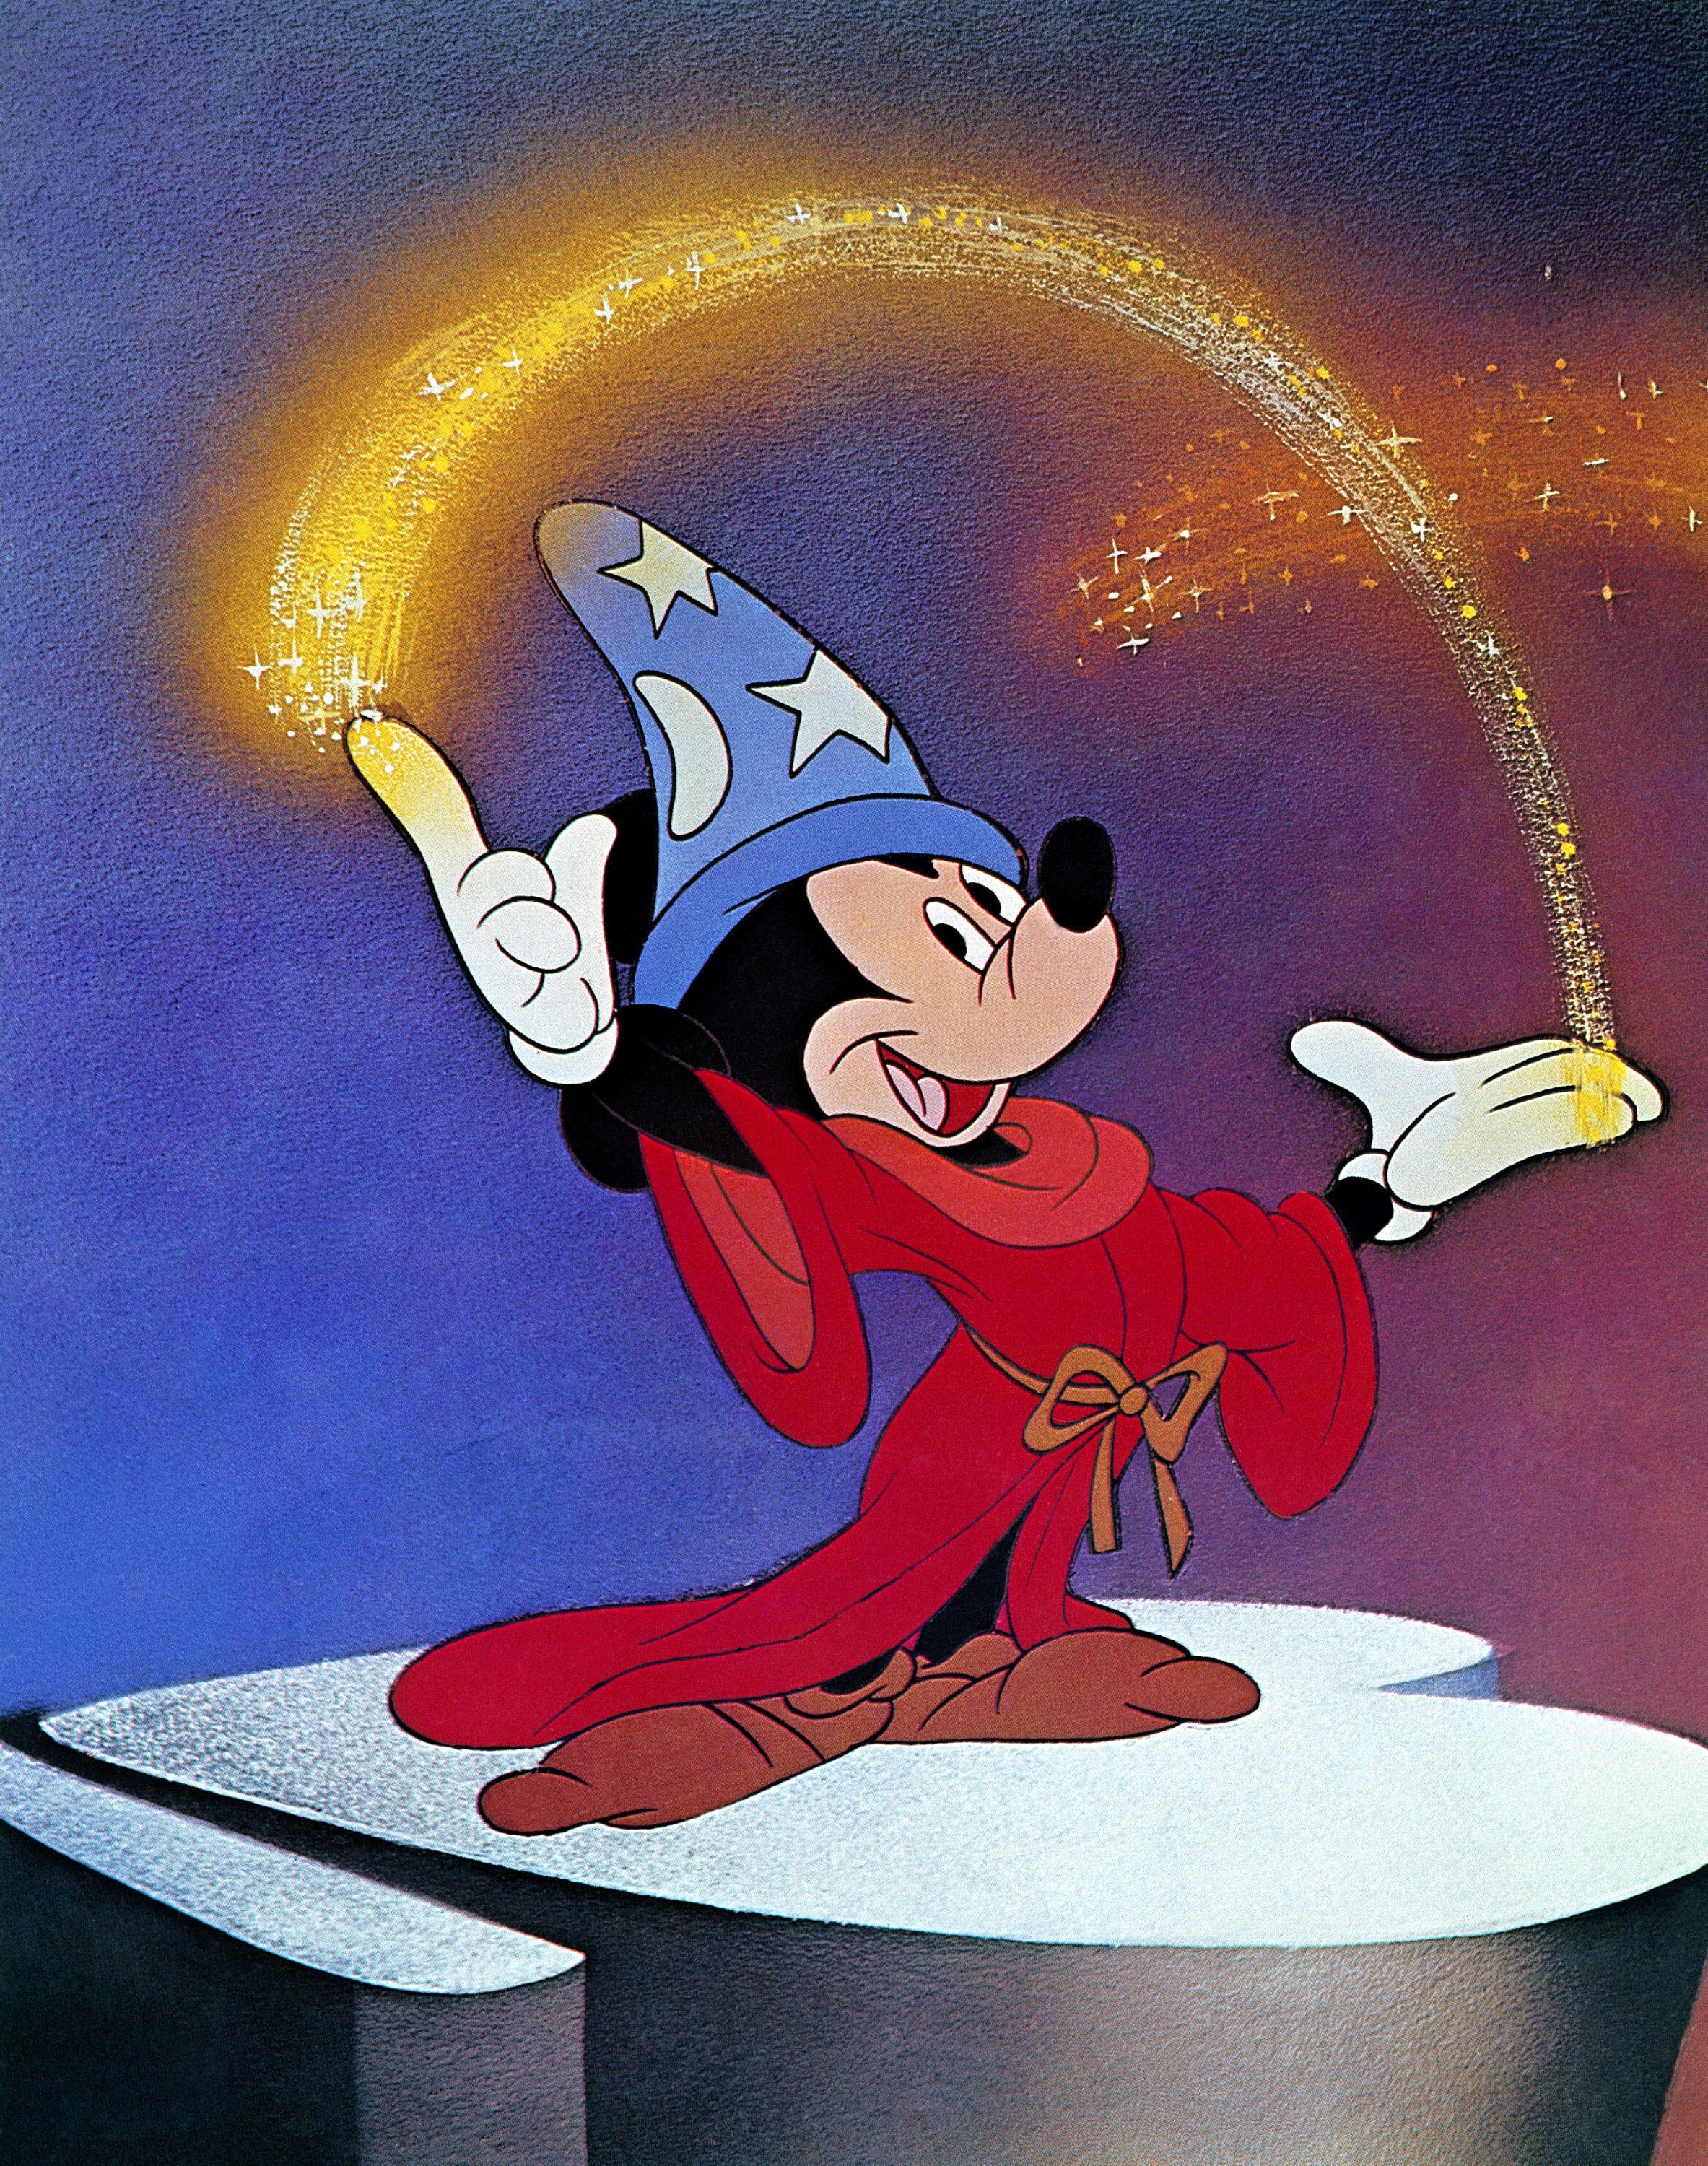 Mickey Mouse veste i panni dell’Apprendista stregone nell’episodio più celebre di “Fantasia”